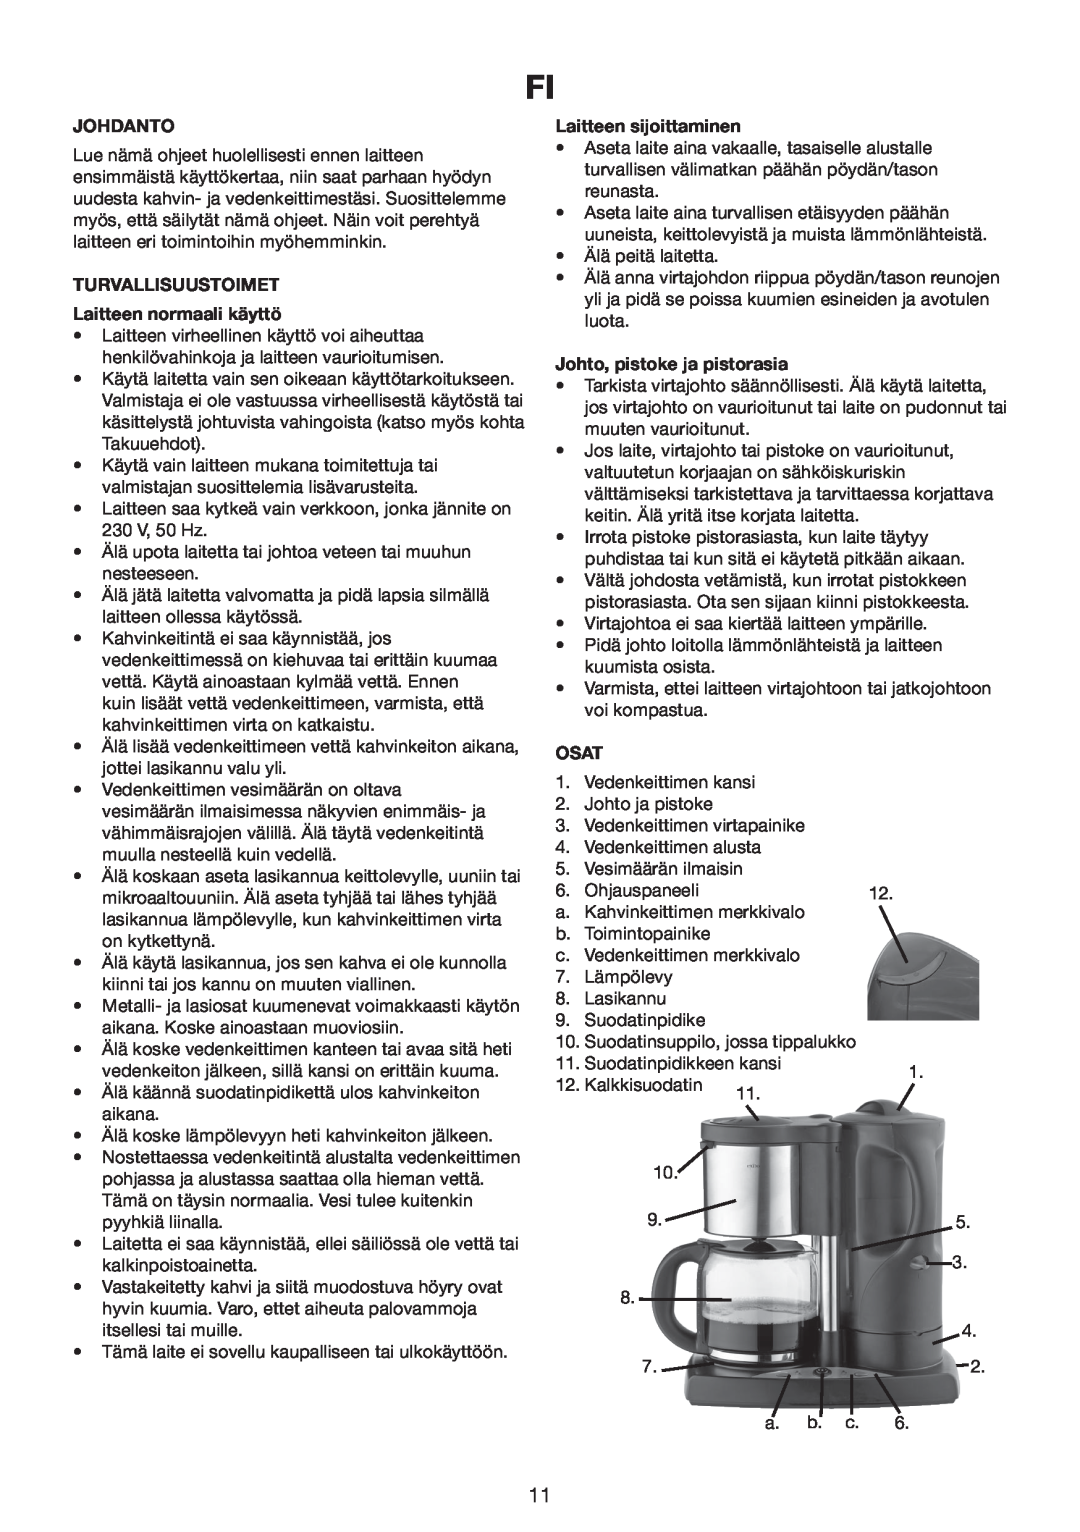 Melissa 645-089 manual Johdanto, TURVALLISUUSTOIMET Laitteen normaali käyttö, Laitteen sijoittaminen, Osat 